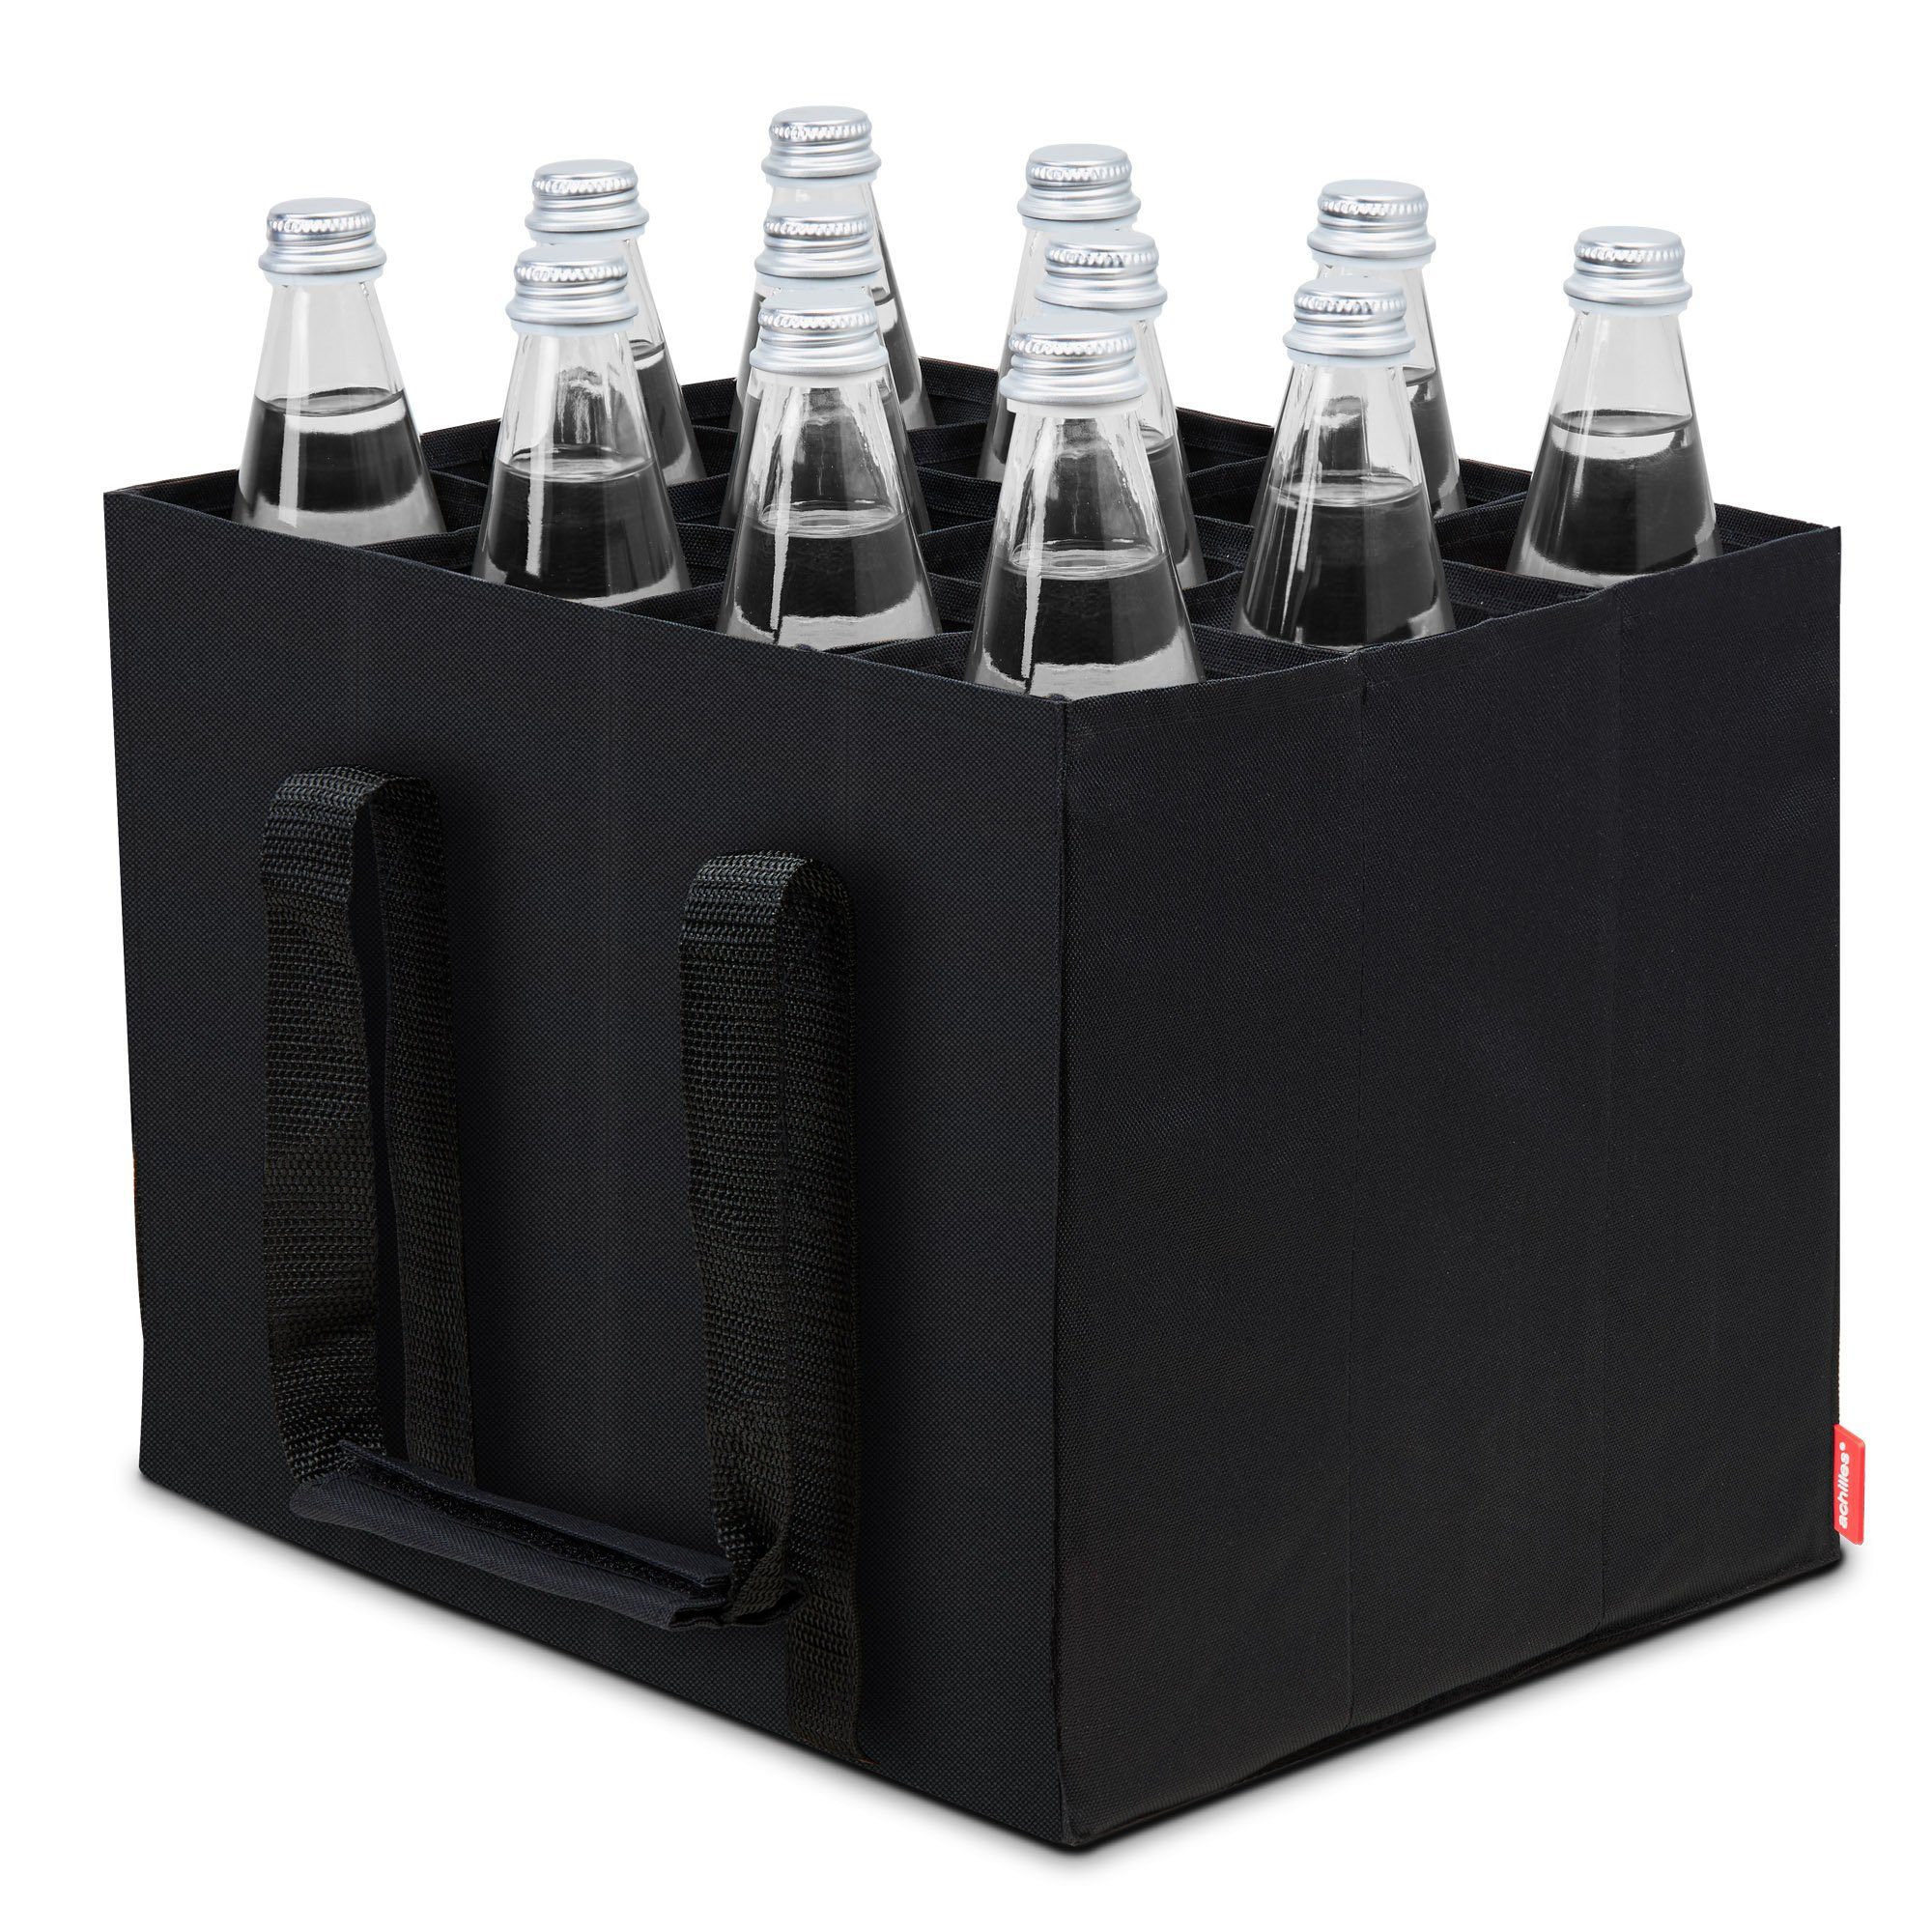 achilles Flaschenkorb 12er Bottle-Bag Flaschentasche für 12 x 1,5 Liter  Wasser-Flaschen Tragetasche mit Trennwänden Einkaufs-Tasche mit 12 Fächer